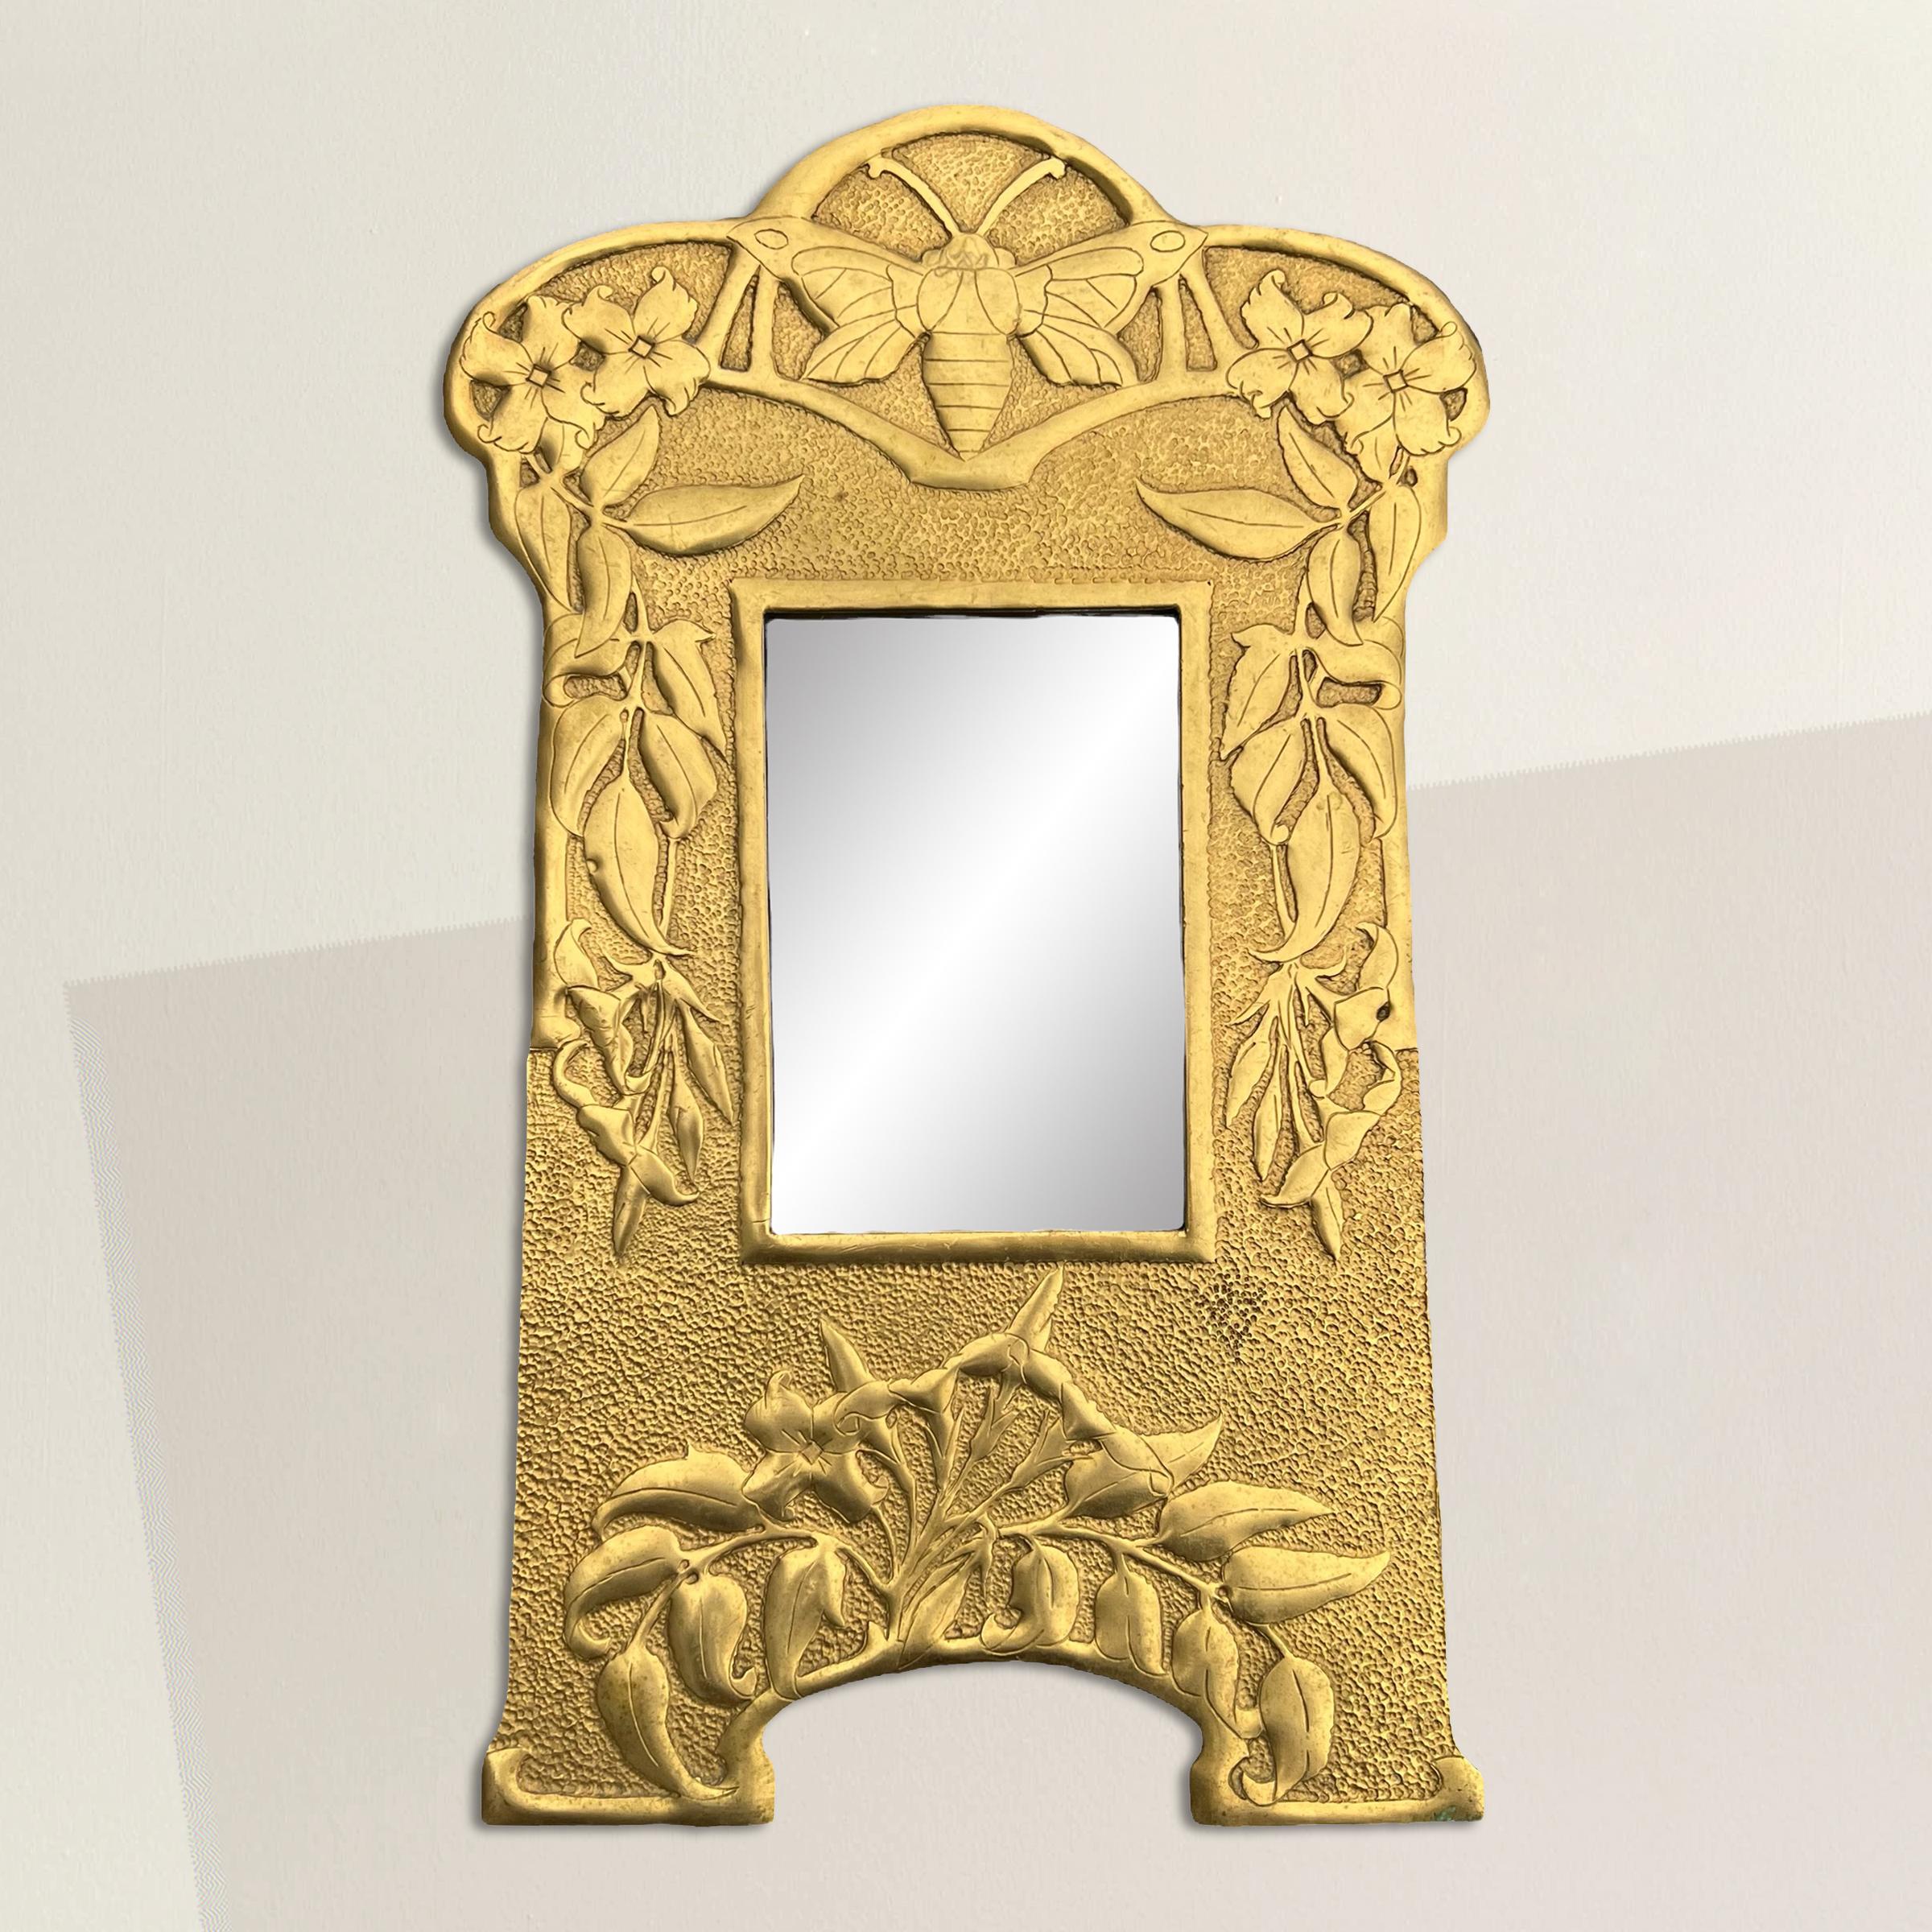 Ce miroir en laiton de style Art nouveau anglais du début du XXe siècle est un véritable régal pour les yeux, car il est orné d'un décor repoussé complexe. Au sommet, une abeille majestueuse symbolise l'industrie, la diligence et la communauté,